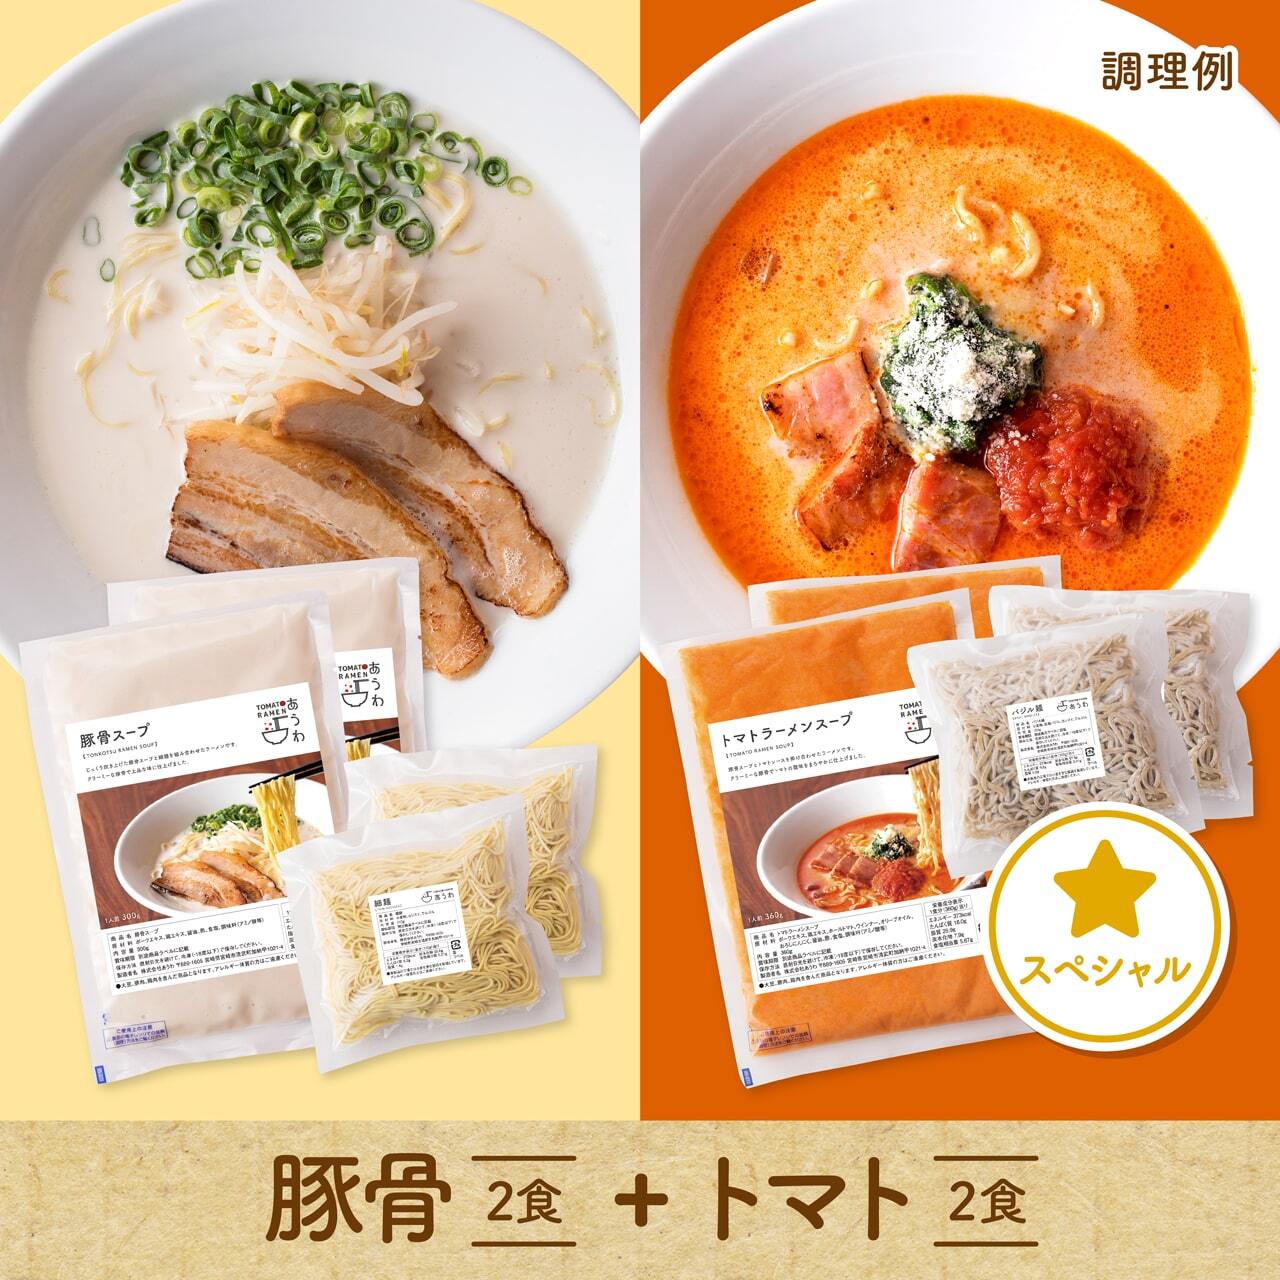 【スペシャルセット】豚骨2食+トマト2食セット